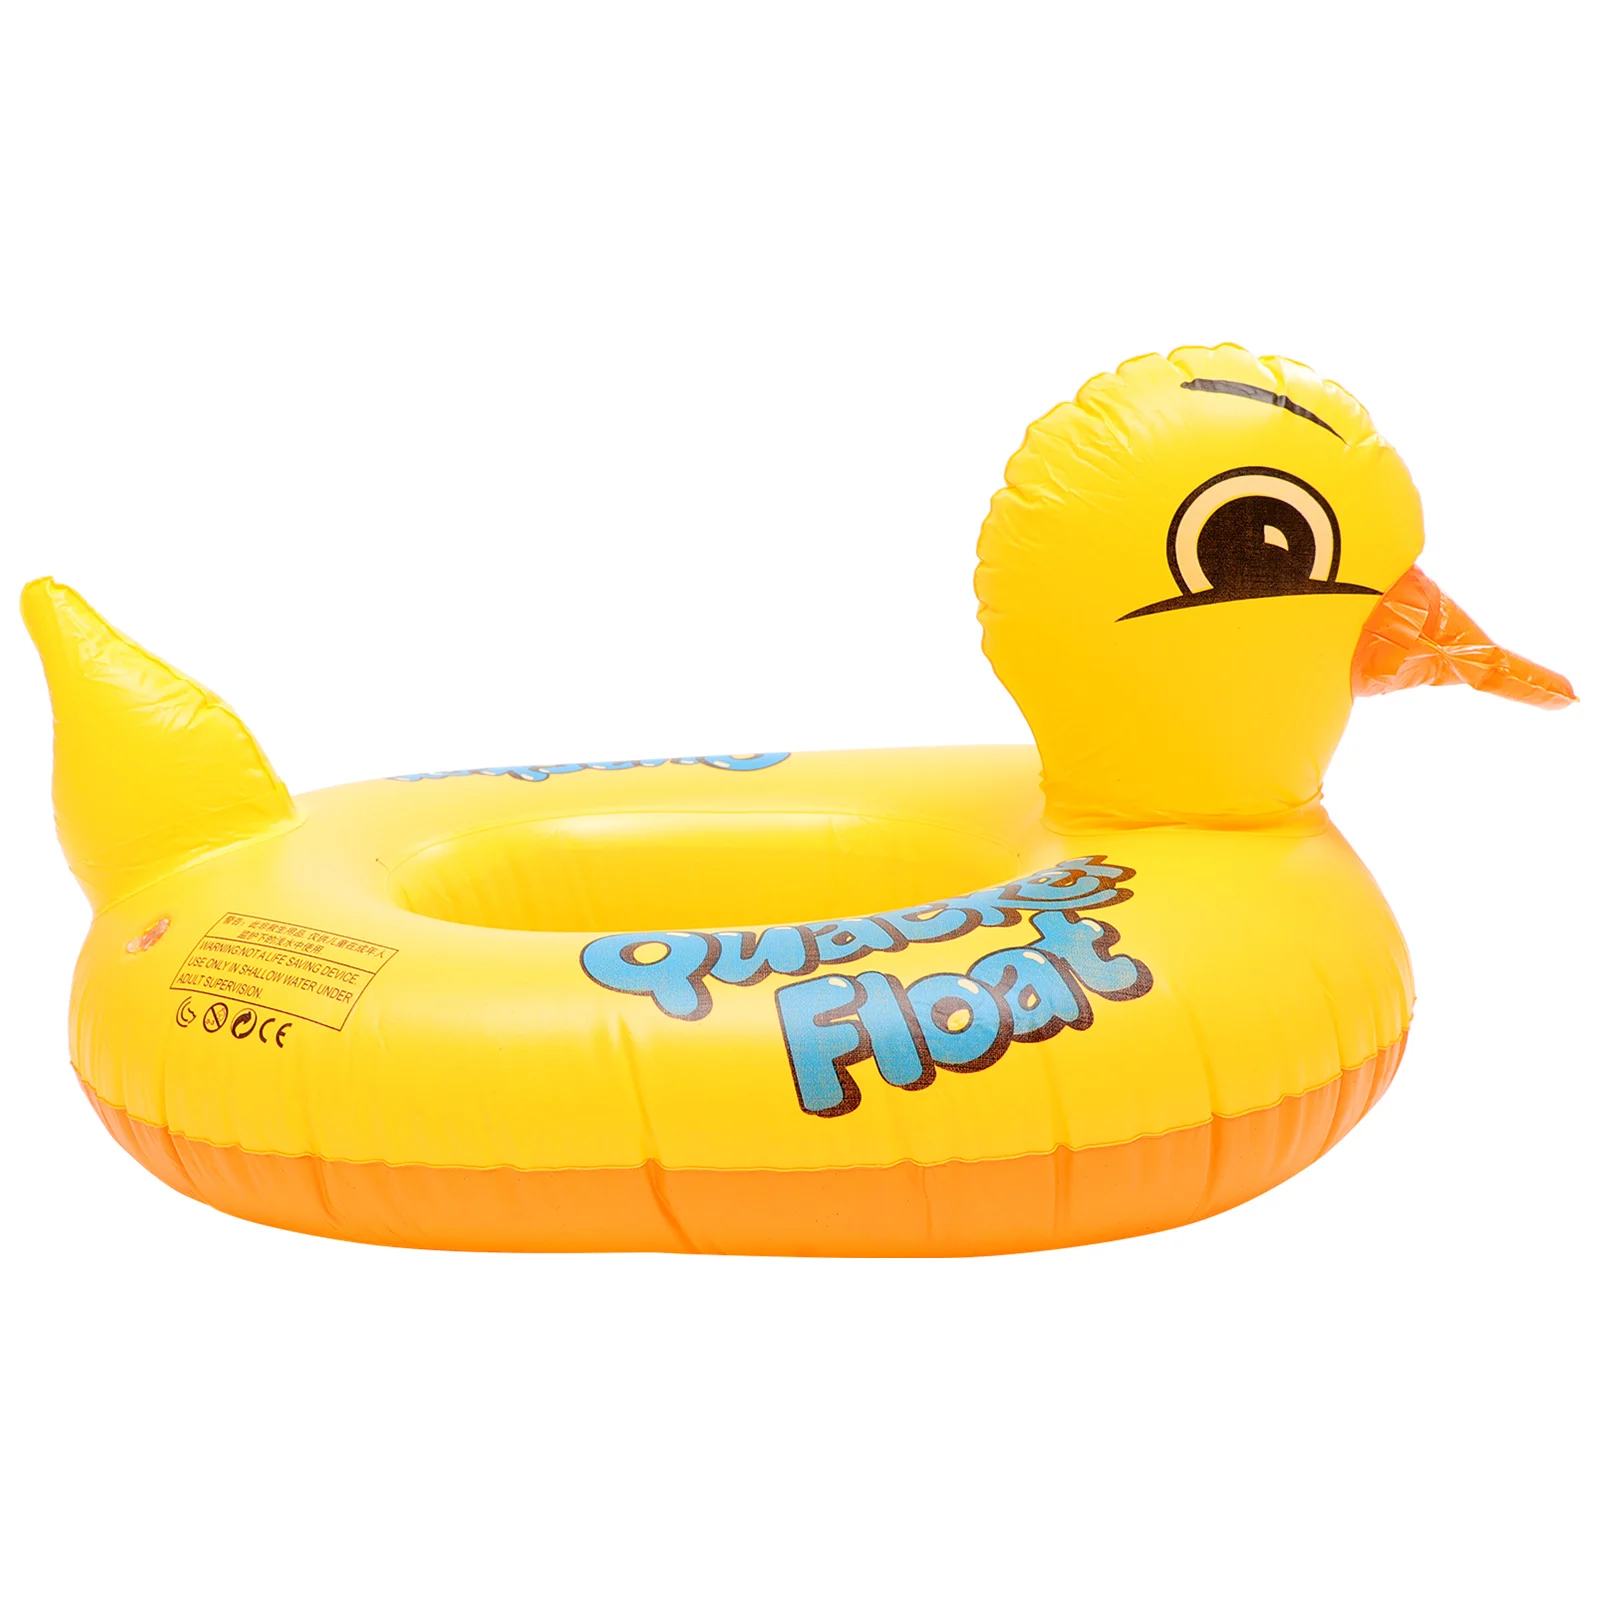 Оборудование для плавания в форме утки, надувной поплавок, детские игрушки из ПВХ с плавающим рядом